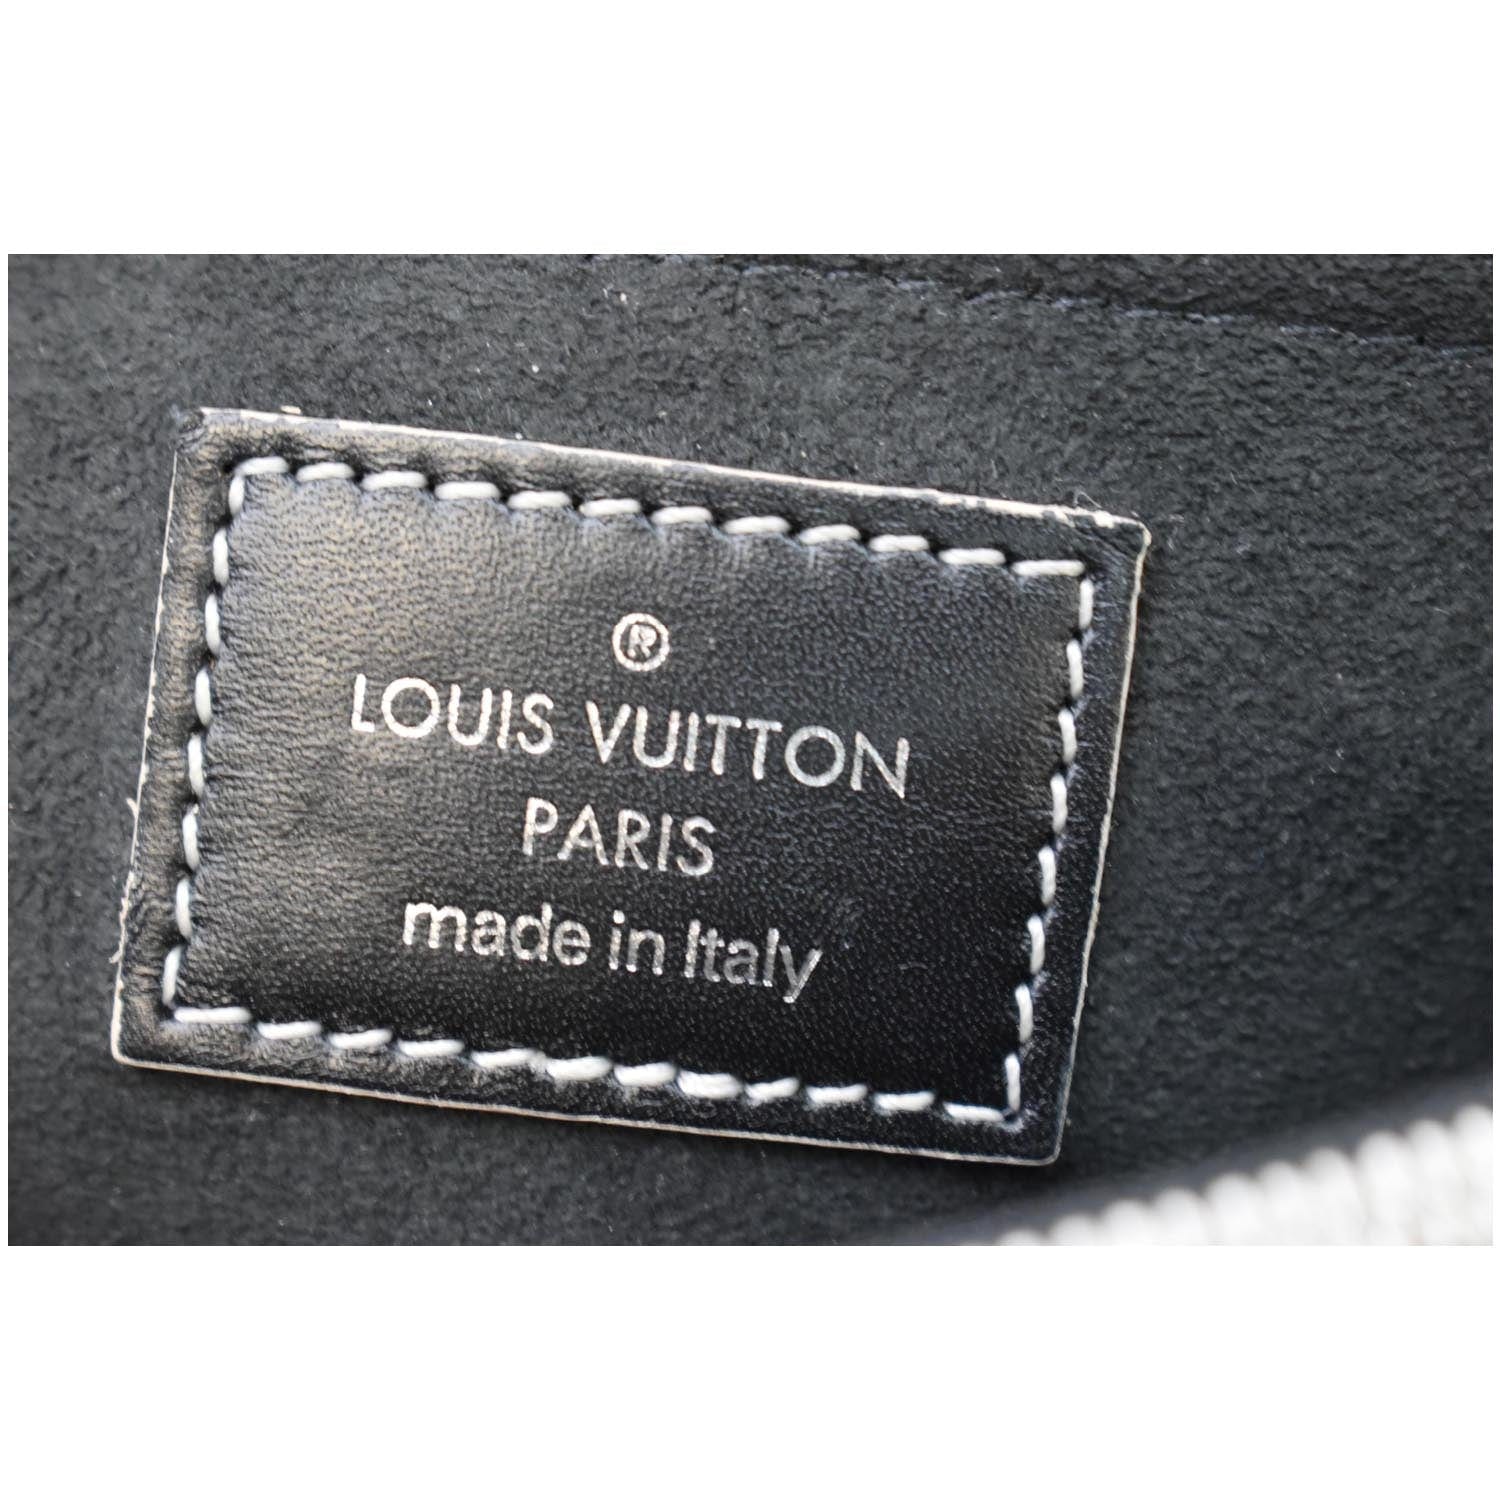 Louis Vuitton biến NFT thành thẻ hội viên cho câu lạc bộ độc quyền